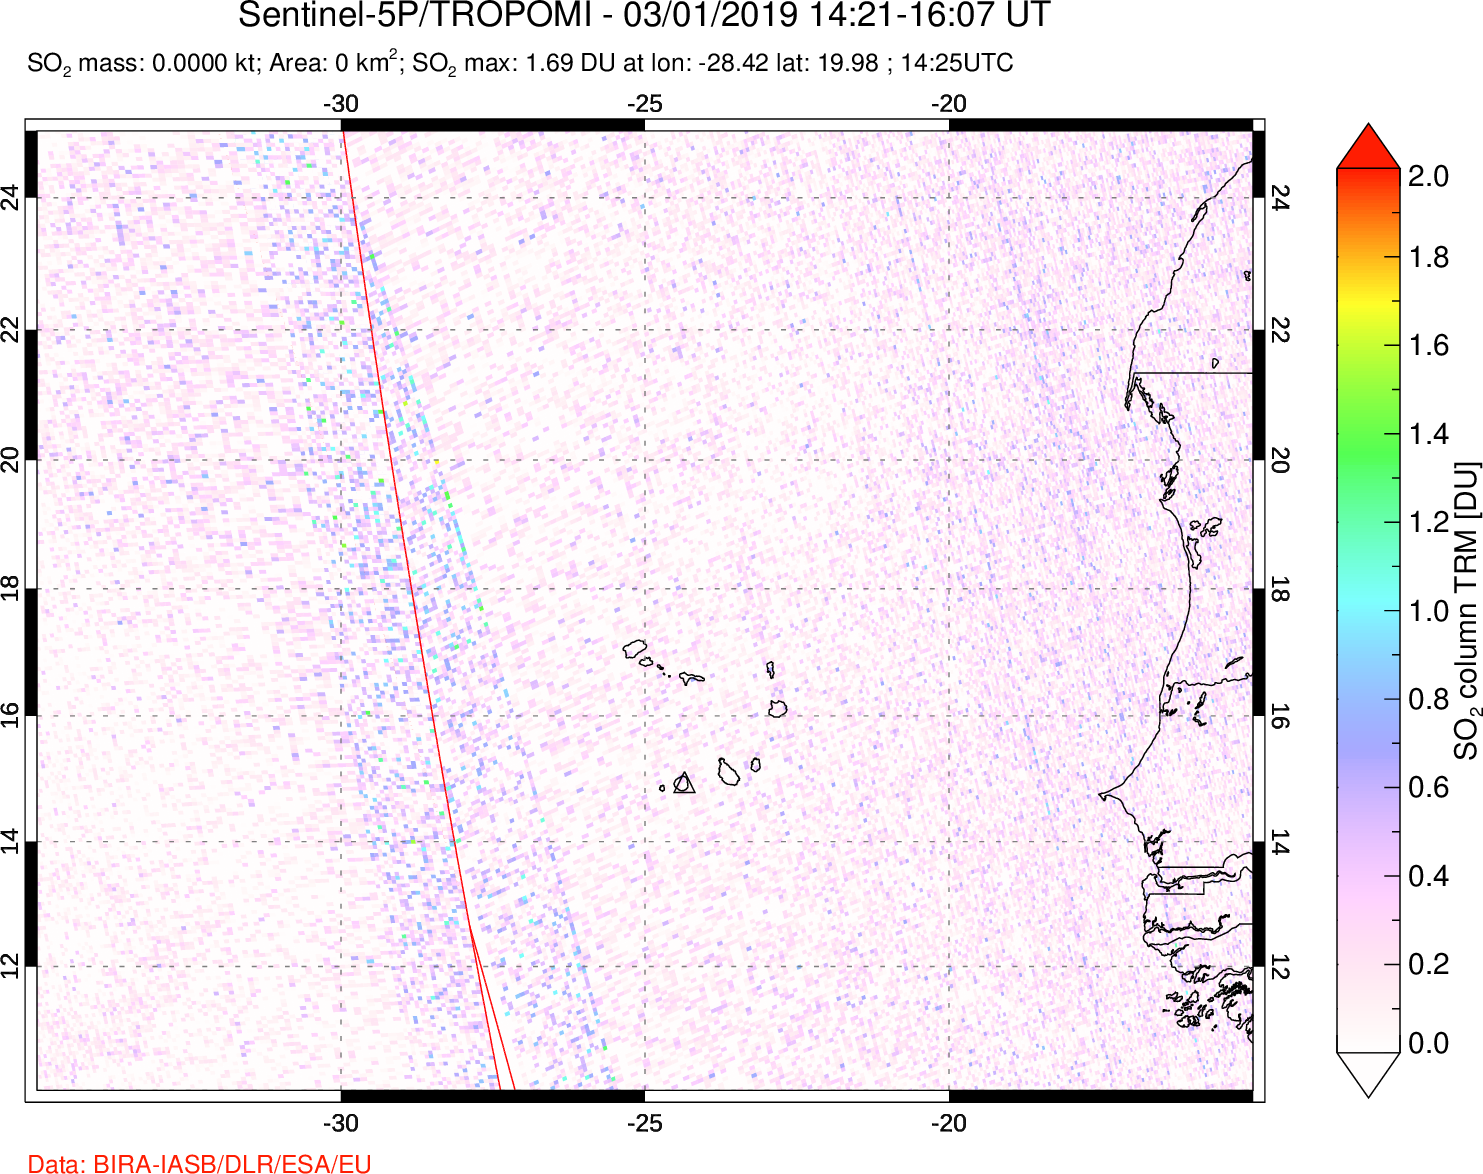 A sulfur dioxide image over Cape Verde Islands on Mar 01, 2019.